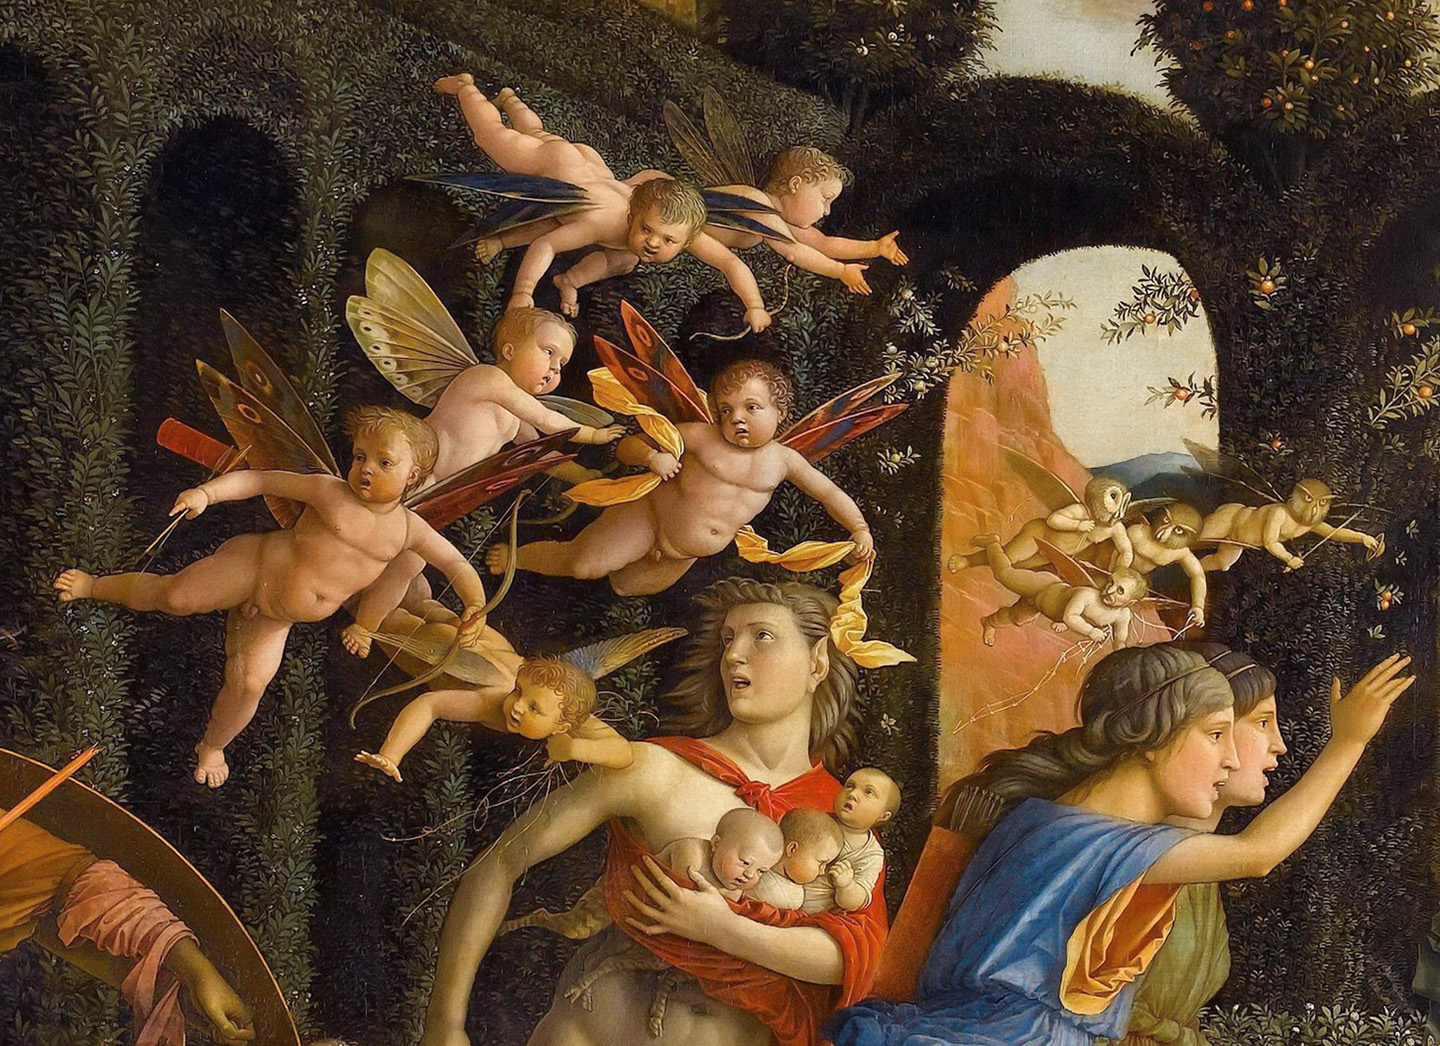 “Cupidi” chuyên làm trò tinh quái tai hại, tháo chạy khỏi khu vườn trong một chi tiết của bức tranh “Minerva Expelling the Vices from the Garden of Virtue” (Nữ Thần Minerva đuổi các Thói xấu khỏi Khu vườn Đức hạnh). (Ảnh: Tài sản công)